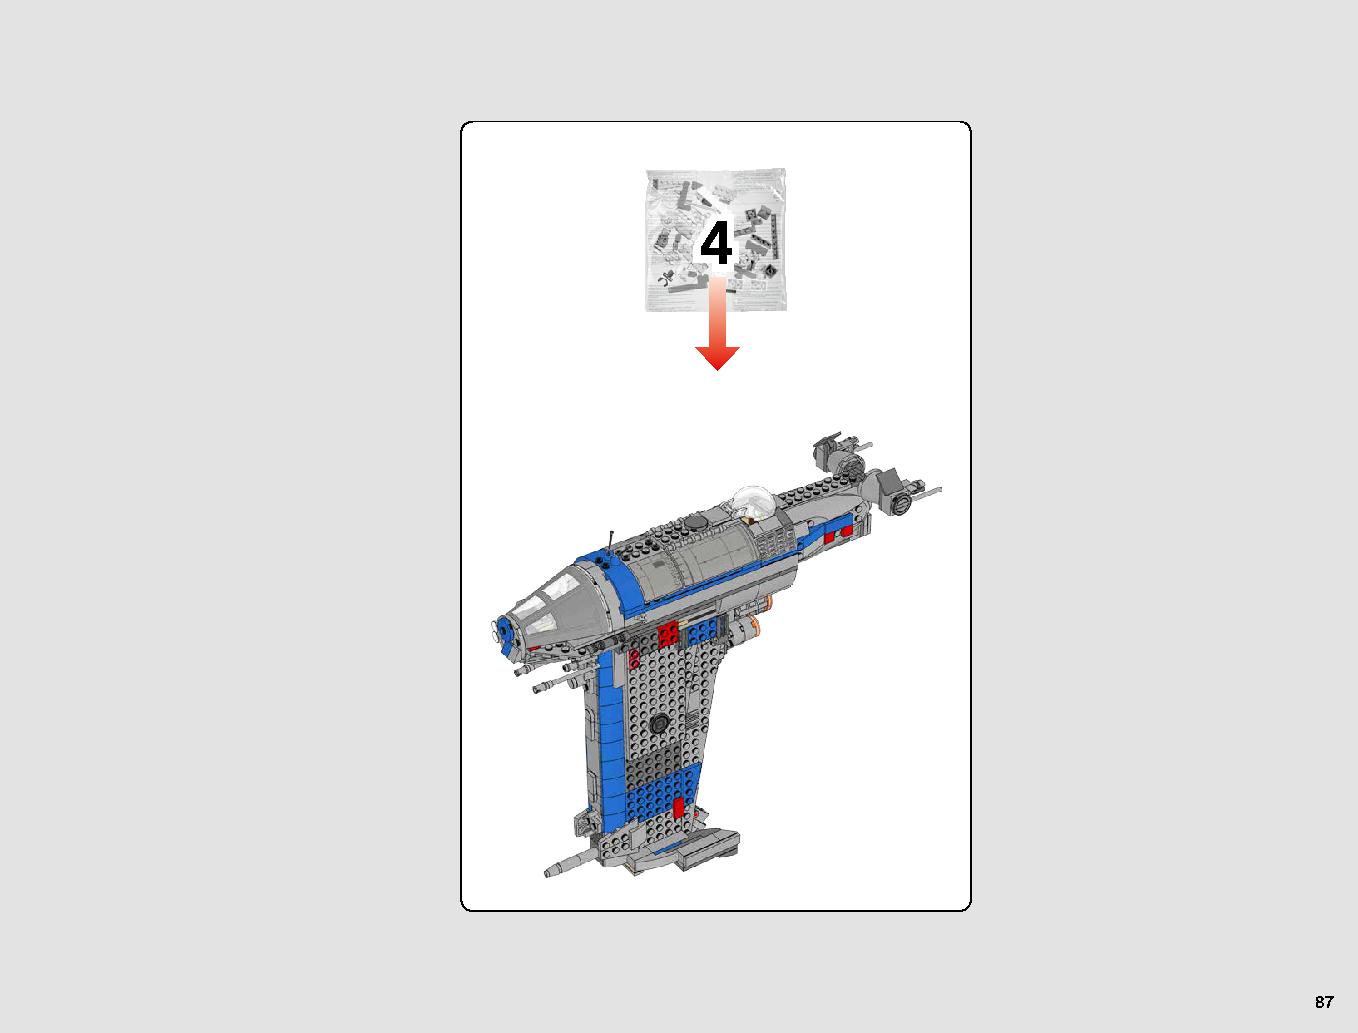 レジスタンス・ボマー 75188 レゴの商品情報 レゴの説明書・組立方法 87 page